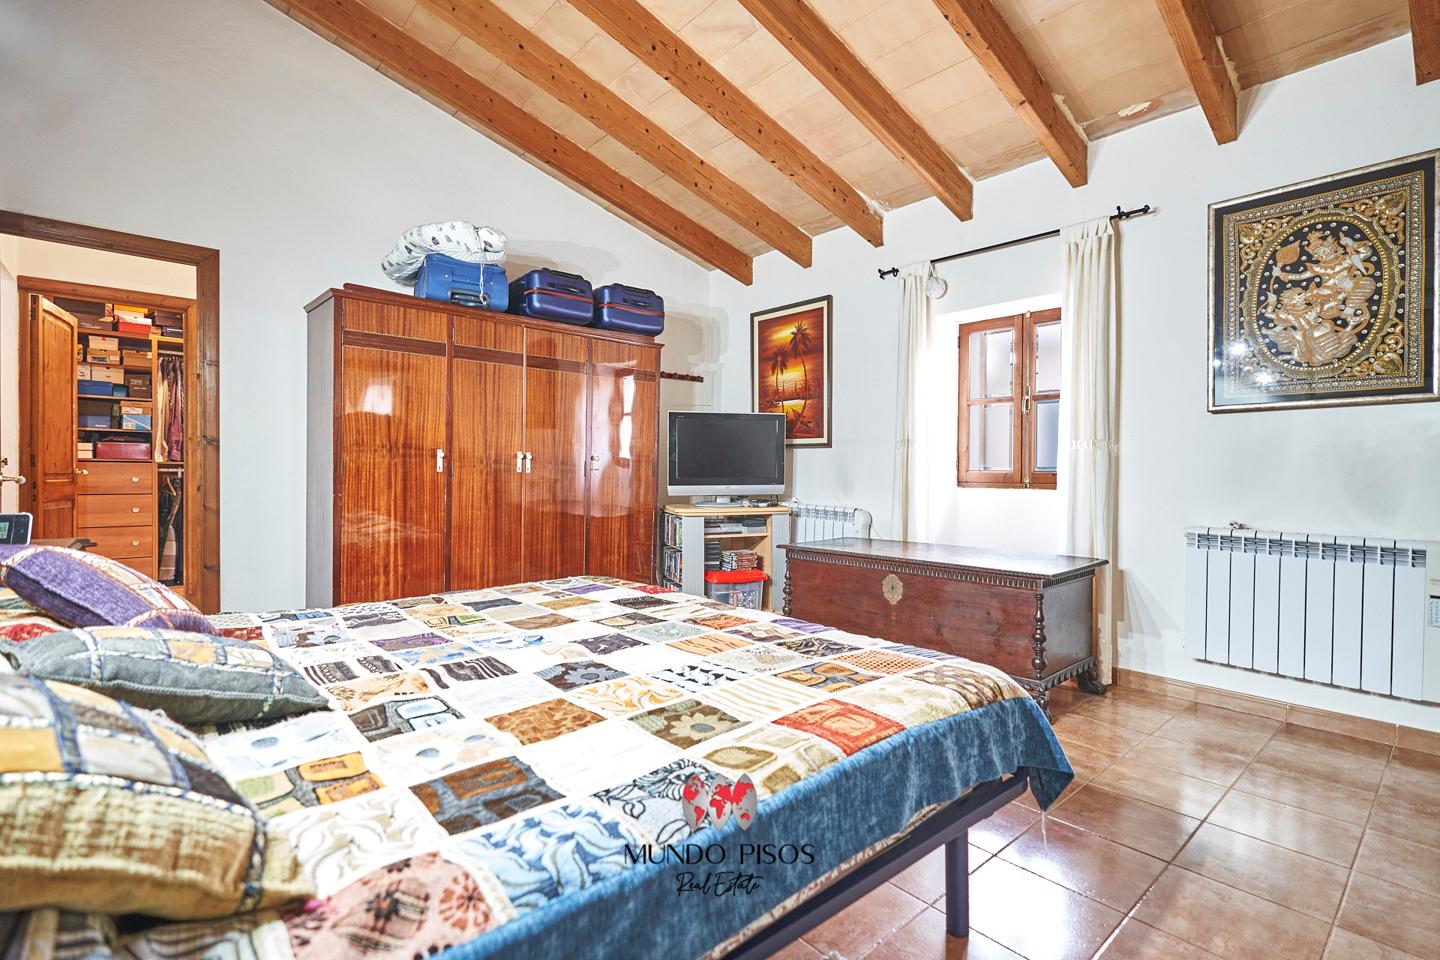 House for sale in Santa María del Camí, Mallorca, Balearic Islands.